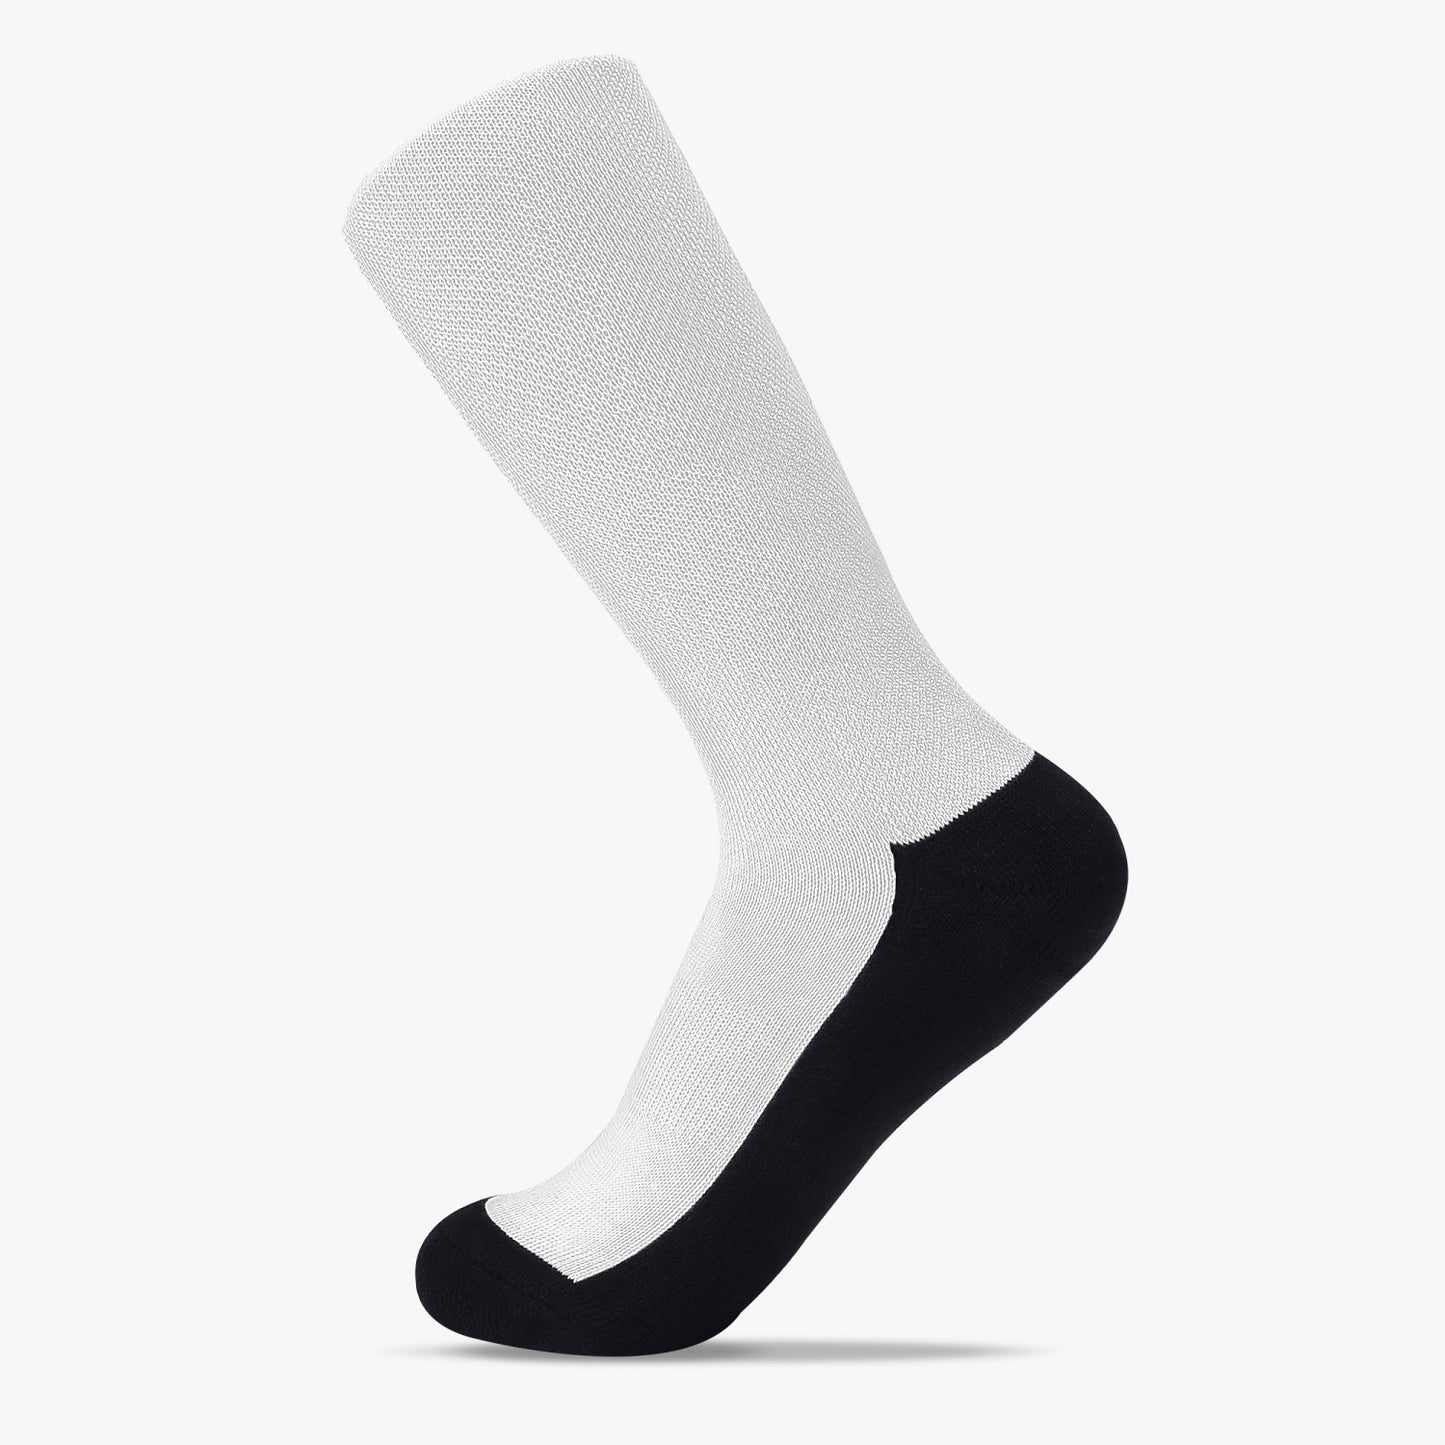 196. Reinforced Sports Socks